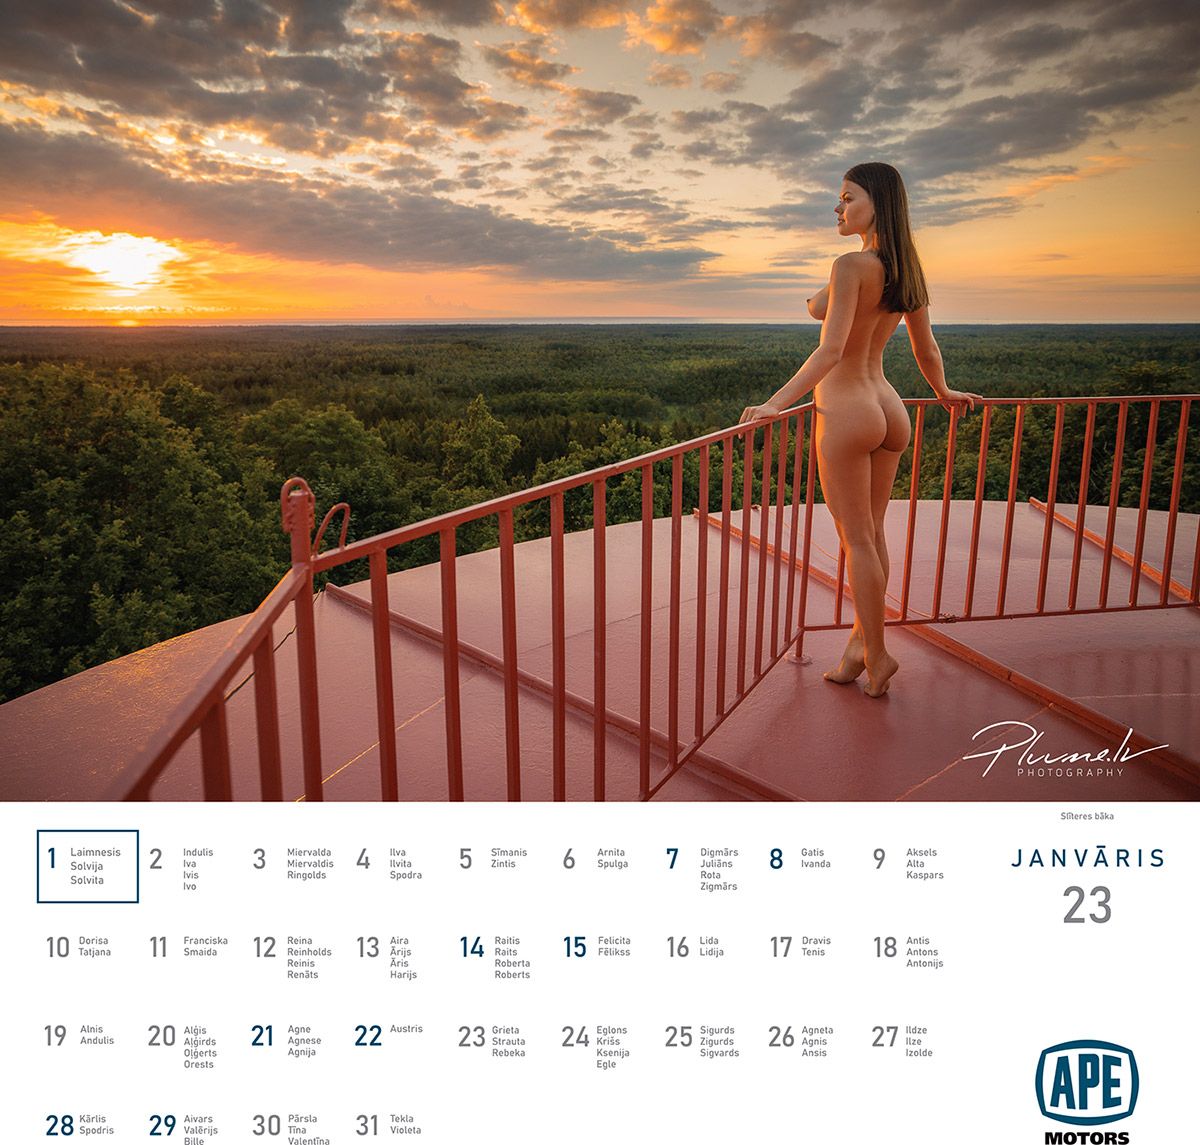 Mārtiņš Plūme | Erotisks kalendārs 2023 gadam, APE Motors | Kailfoto kalendars kailfoto fotografs fotografs Martins Plume 2